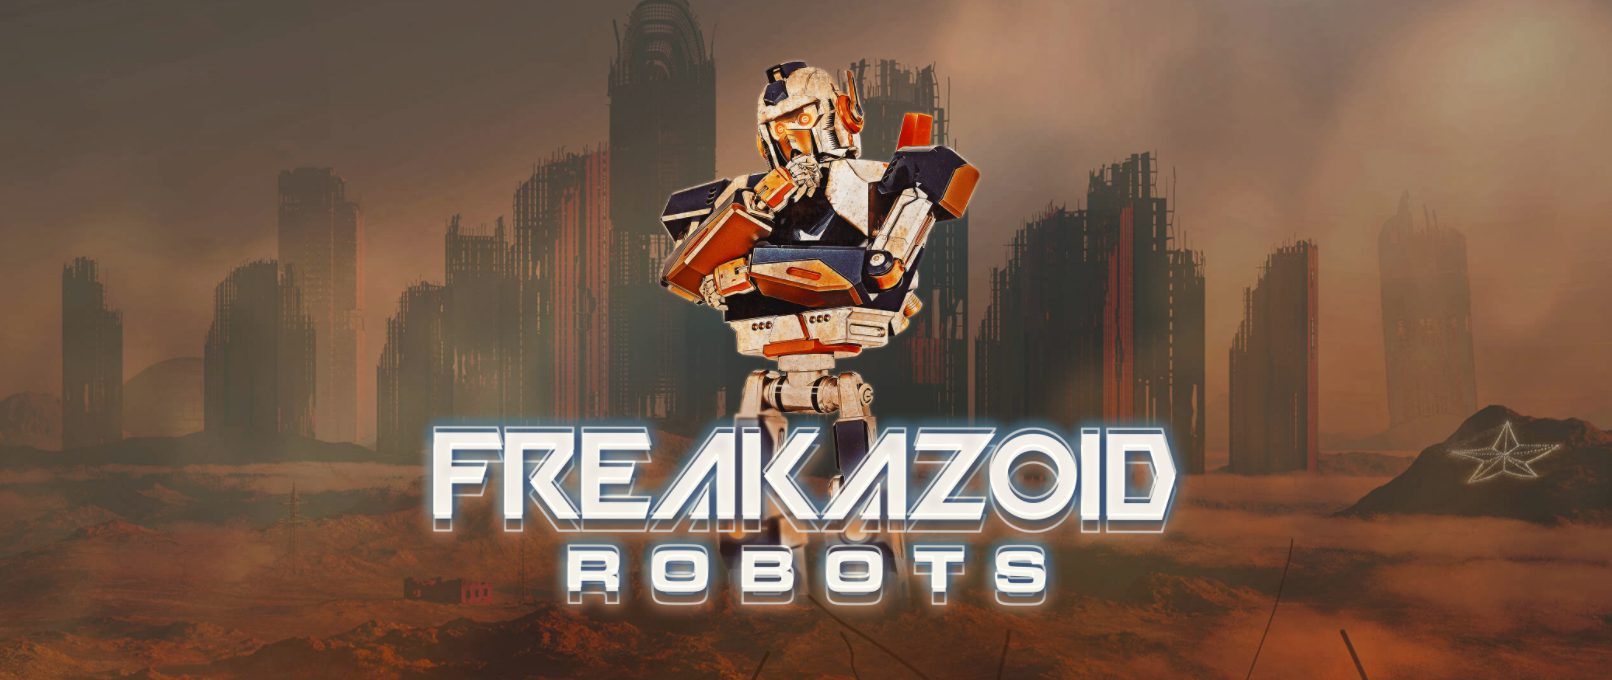 Freakazoid Robots 2021